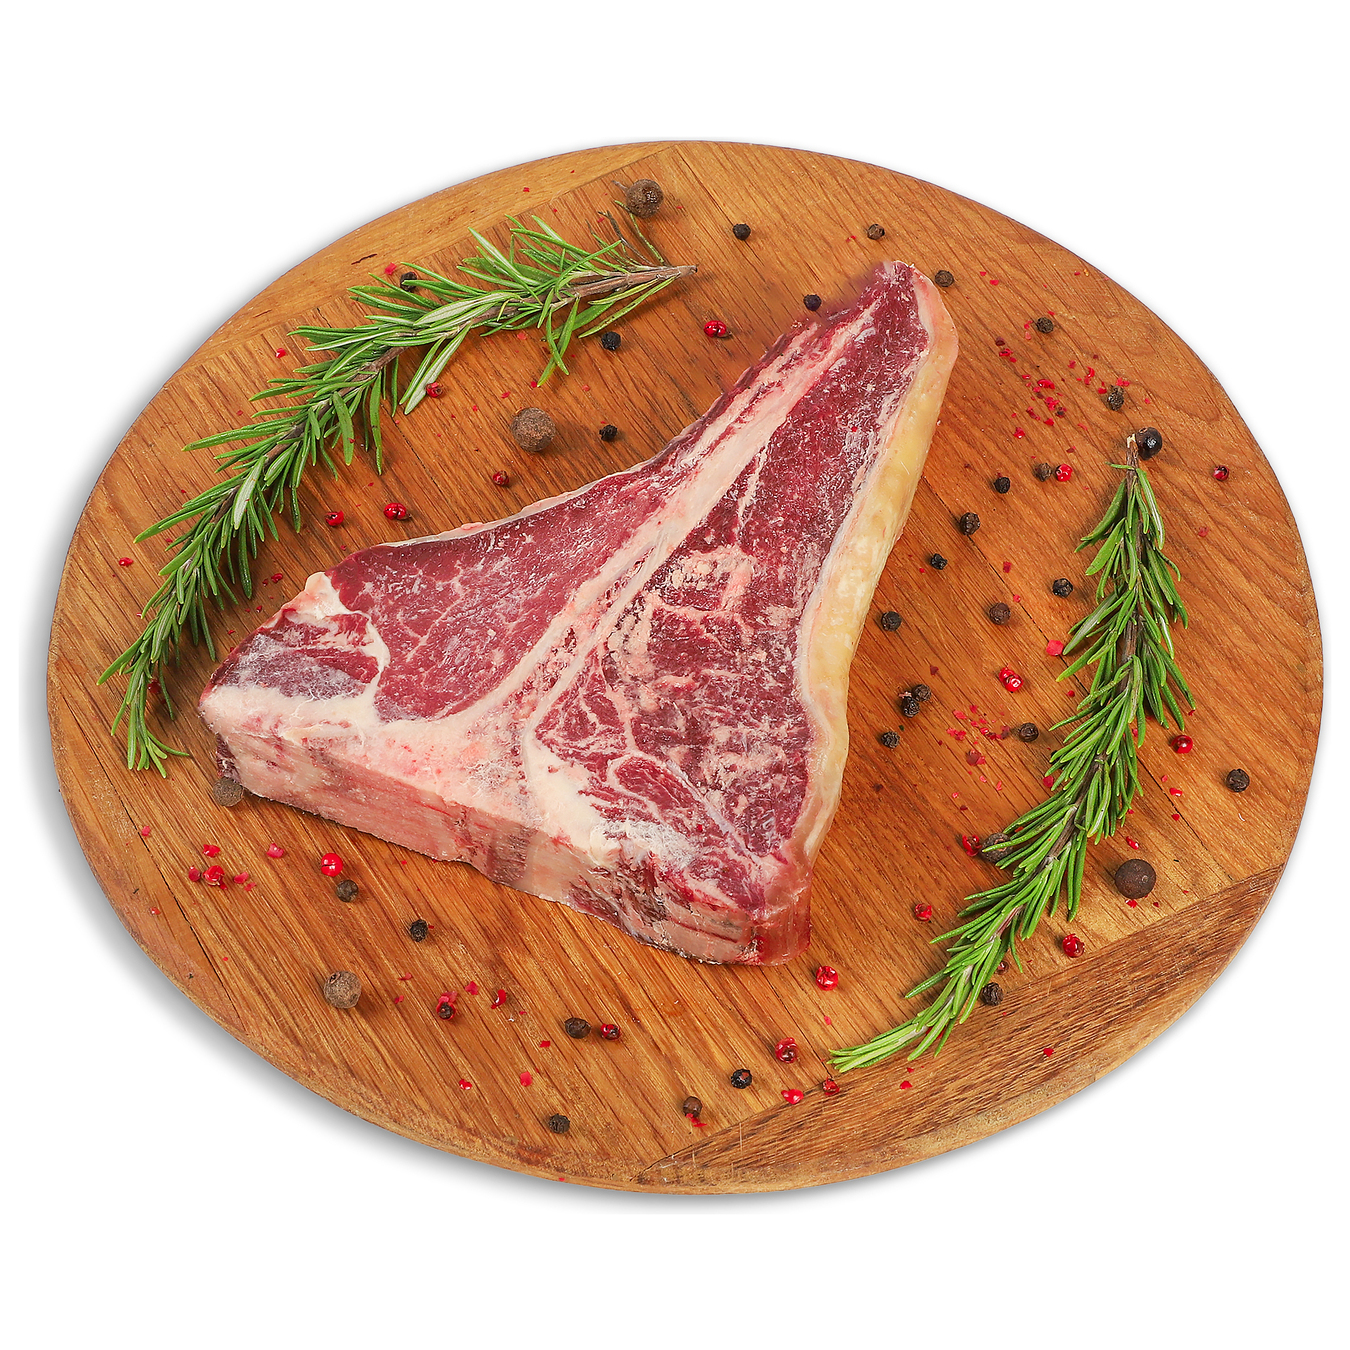 Tibone steak vacuum packaging chilled